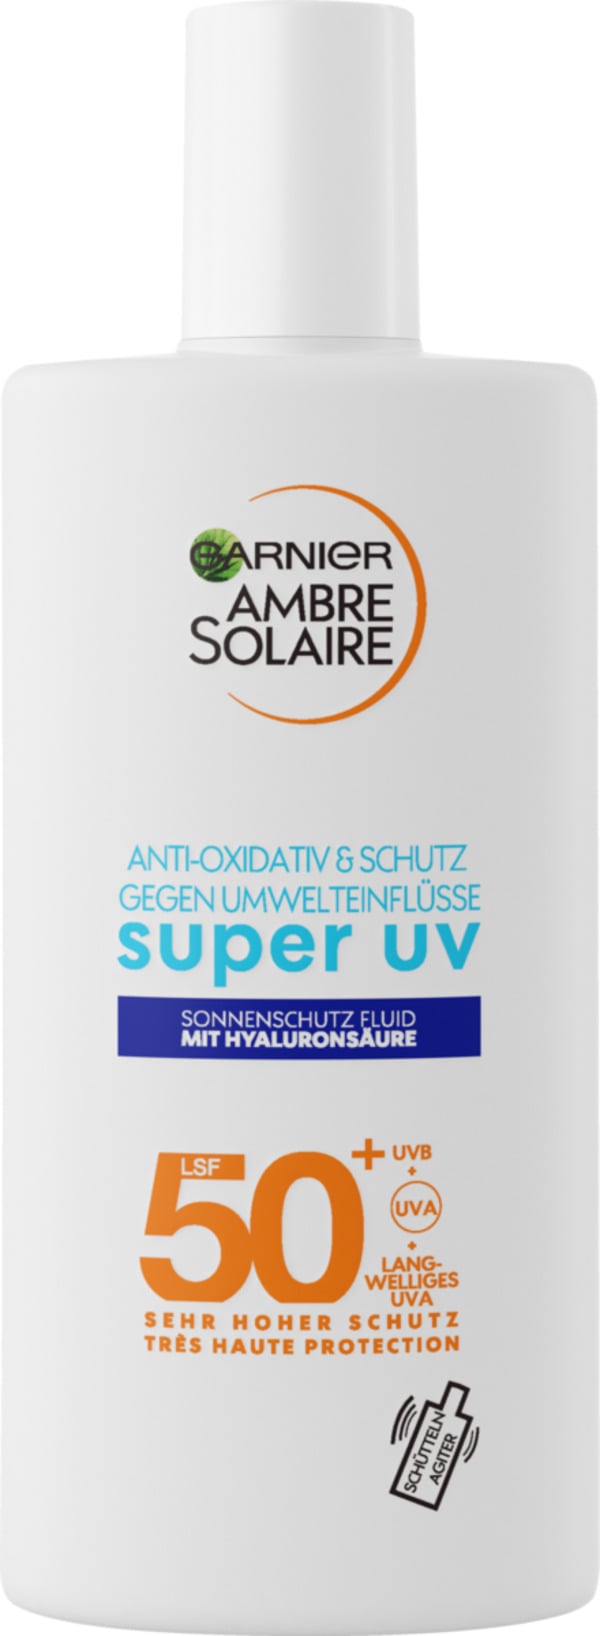 Bild 1 von Garnier Ambre Solaire sensitive expert+ Gesicht UV-Schutz Fluid LSF 50+